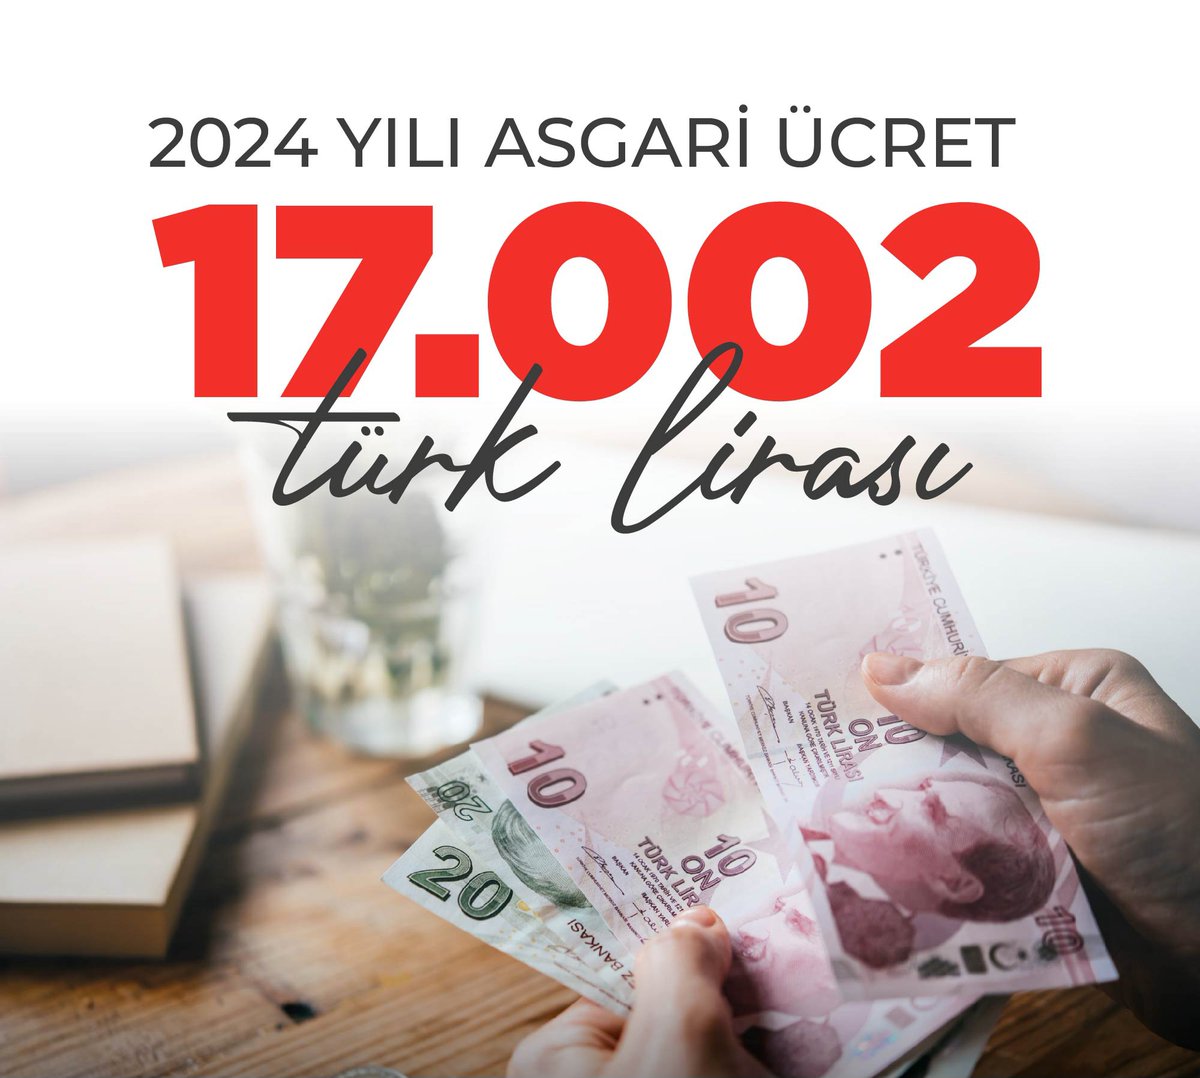 Yeni Asgari ücret ;

17.002 Türk lirası hayırlı olsun..

📍Müjdeler olsun

#asgariücret #SonDakika 

#TeşekkürlerErdoğan 🇹🇷